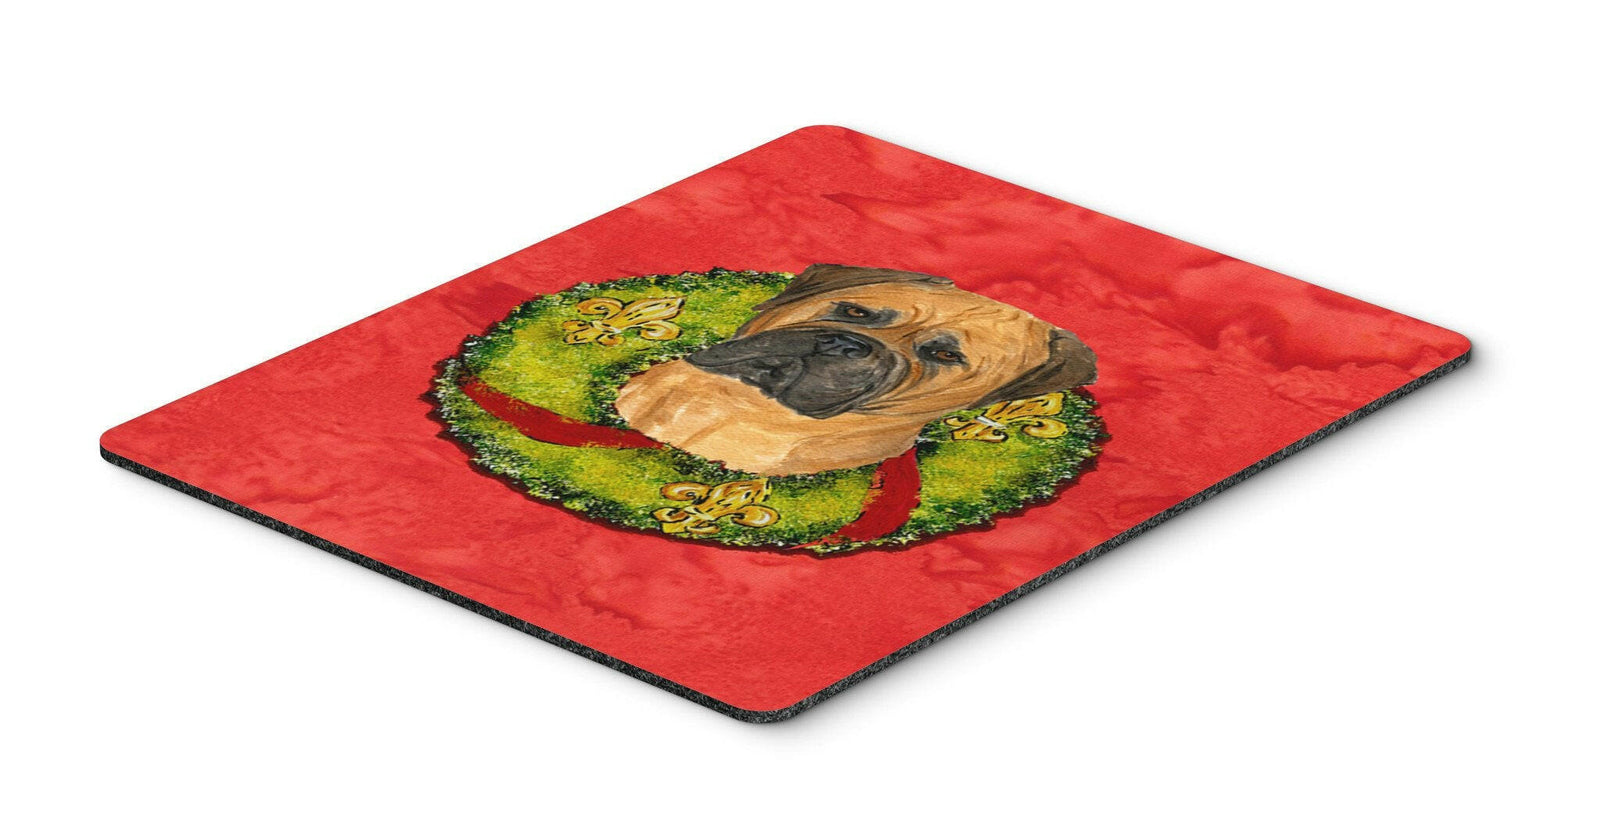 Bullmastiff Mouse Pad, Hot Pad or Trivet by Caroline's Treasures